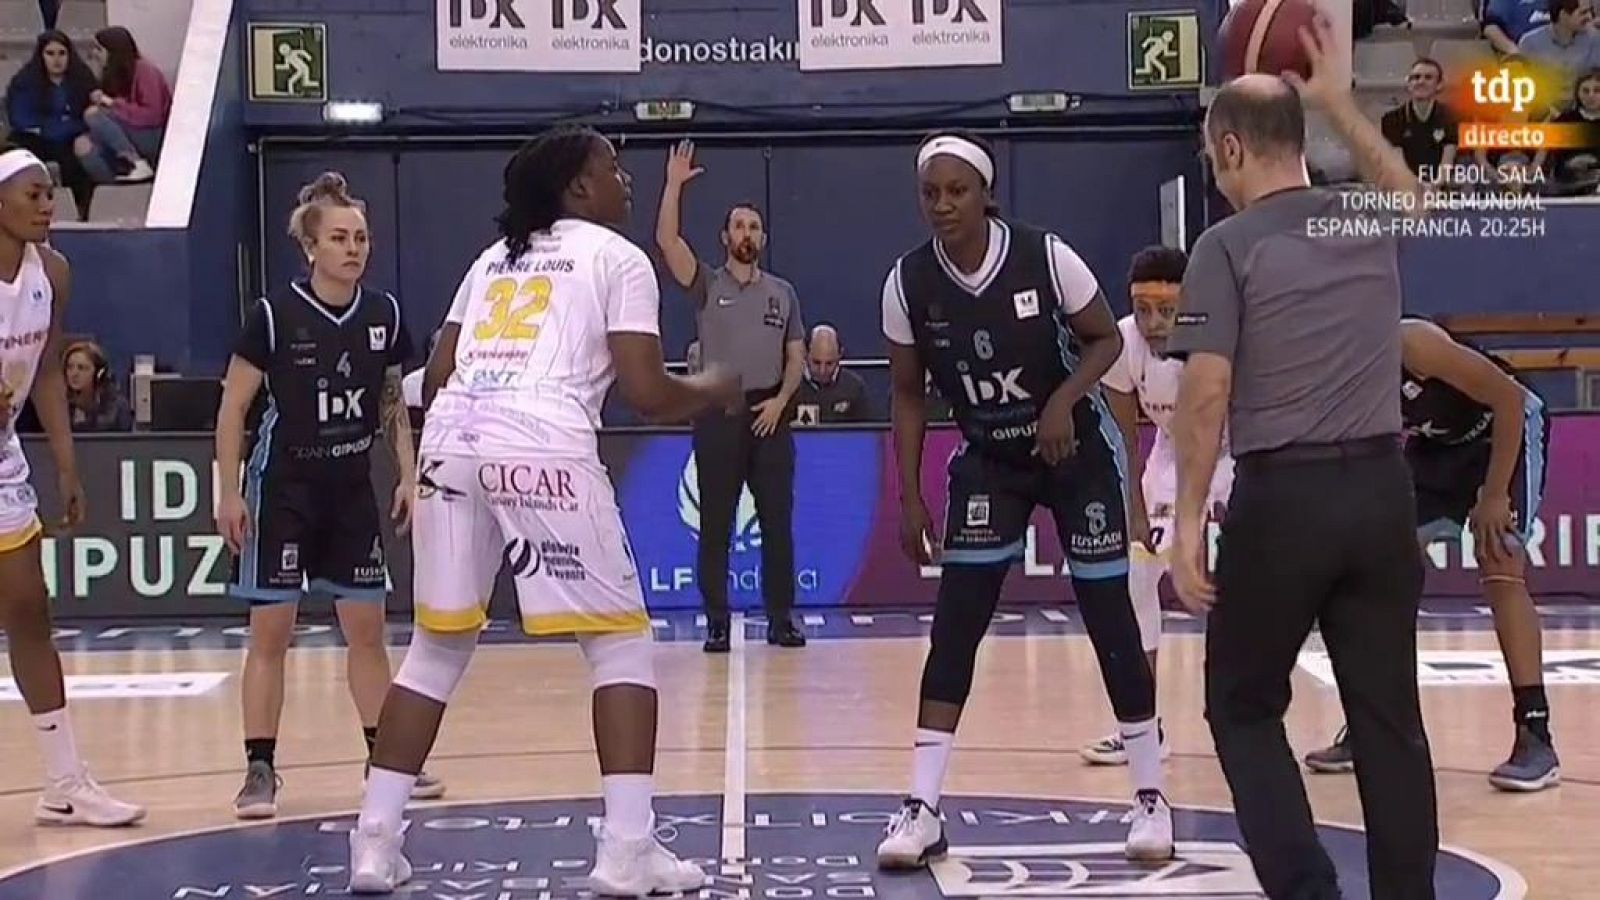 Baloncesto - Liga femenina Endesa. 19ª jornada : IDK Gipuzkoa - Ciudad de La Laguna Tenerife - RTVE.es